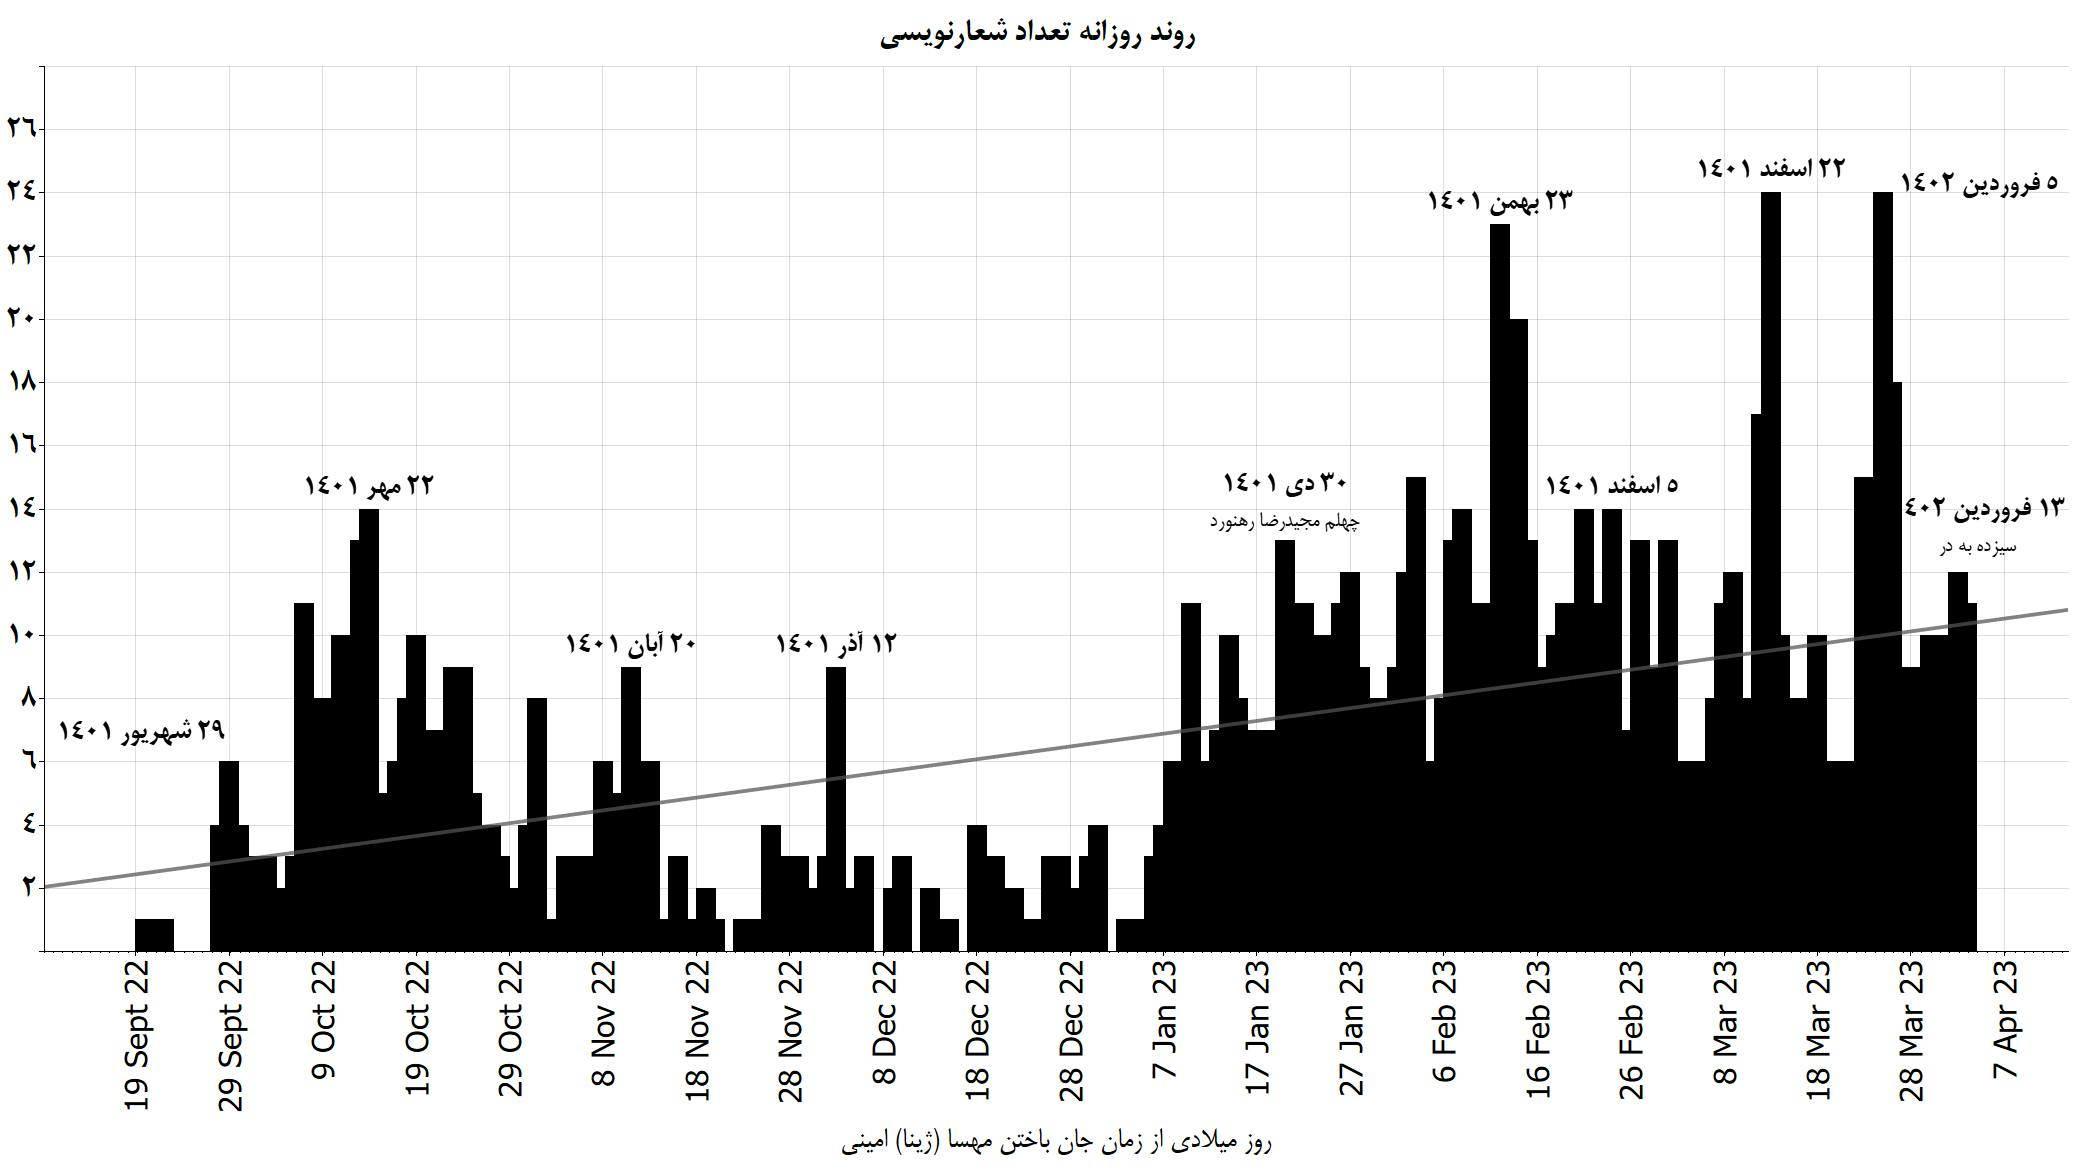 نمودار نه: روند روزانه تعداد شعارنویسی‌های ثبت شده در ۲۰۰ روز جنبش انقلابی مردم ایران